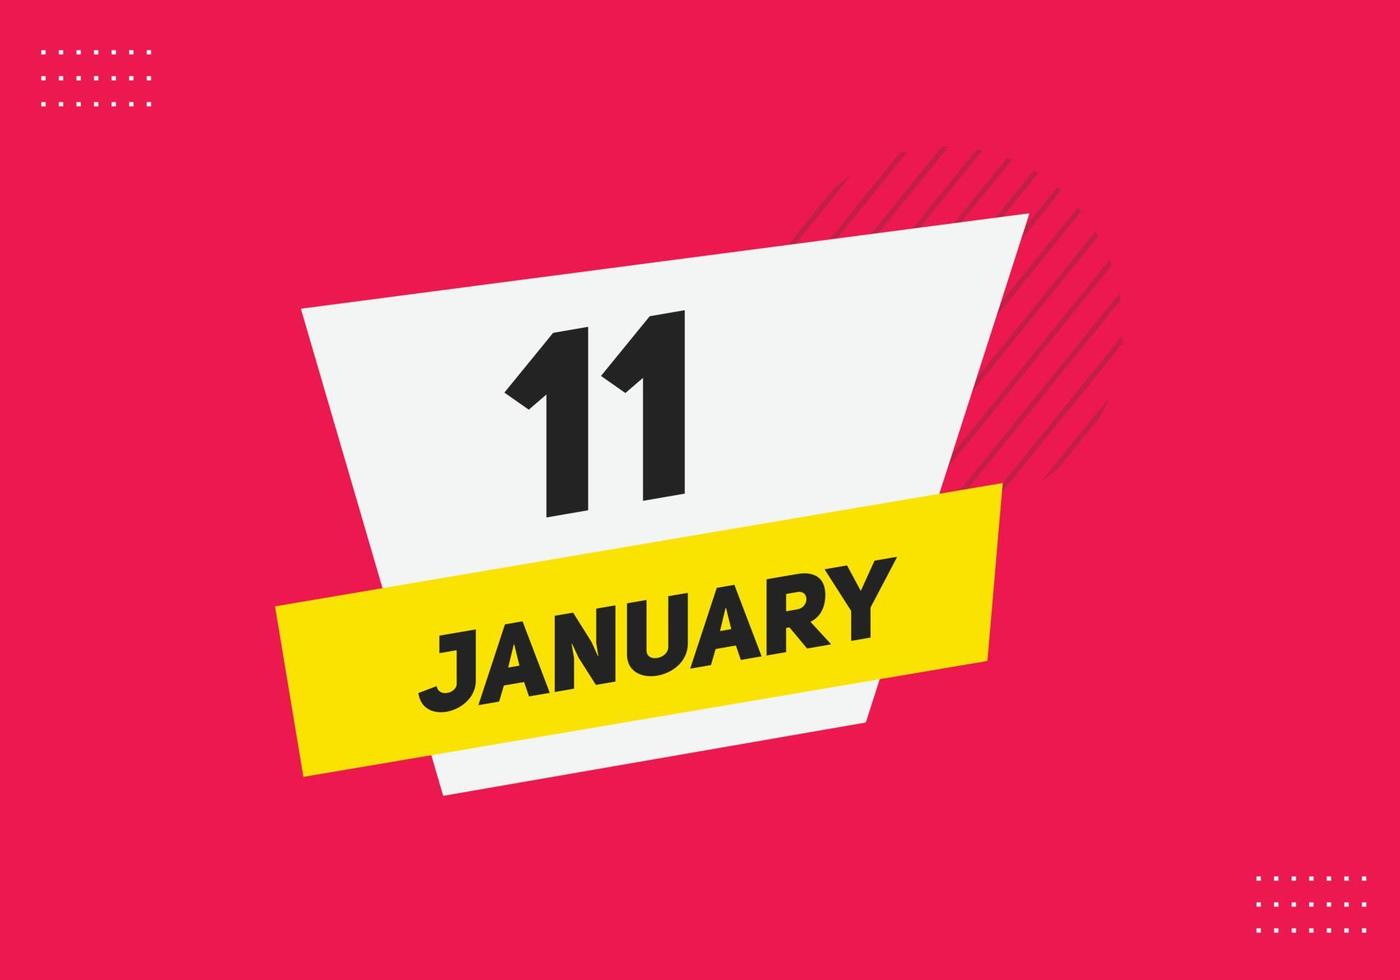 januari 11 kalender herinnering. 11e januari dagelijks kalender icoon sjabloon. kalender 11e januari icoon ontwerp sjabloon. vector illustratie